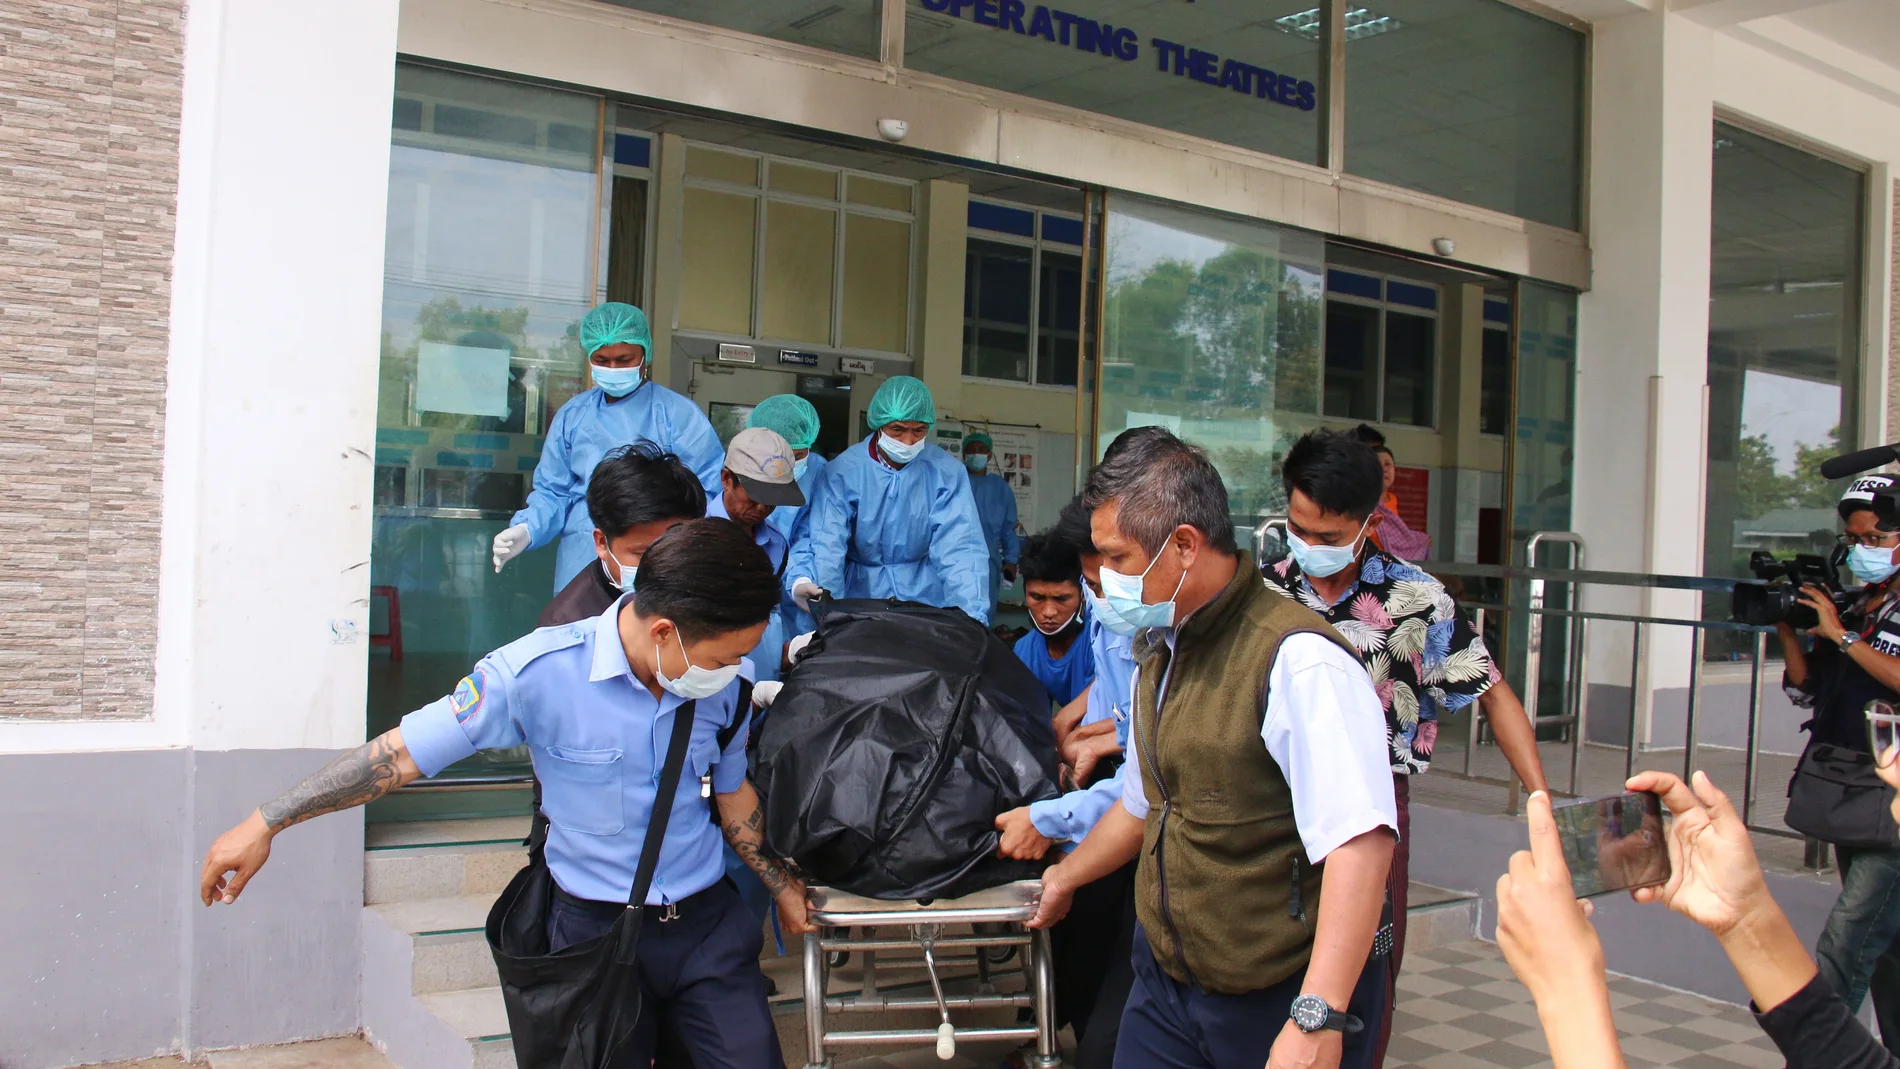 Personal del hospital transporta el cuerpo de Mya Thwe Thwe Khaing, la joven que recibió un disparo en la cabeza en una protesta contra el golpe, en Naypyitaw, Myanmar, el 19 de febrero de 2021